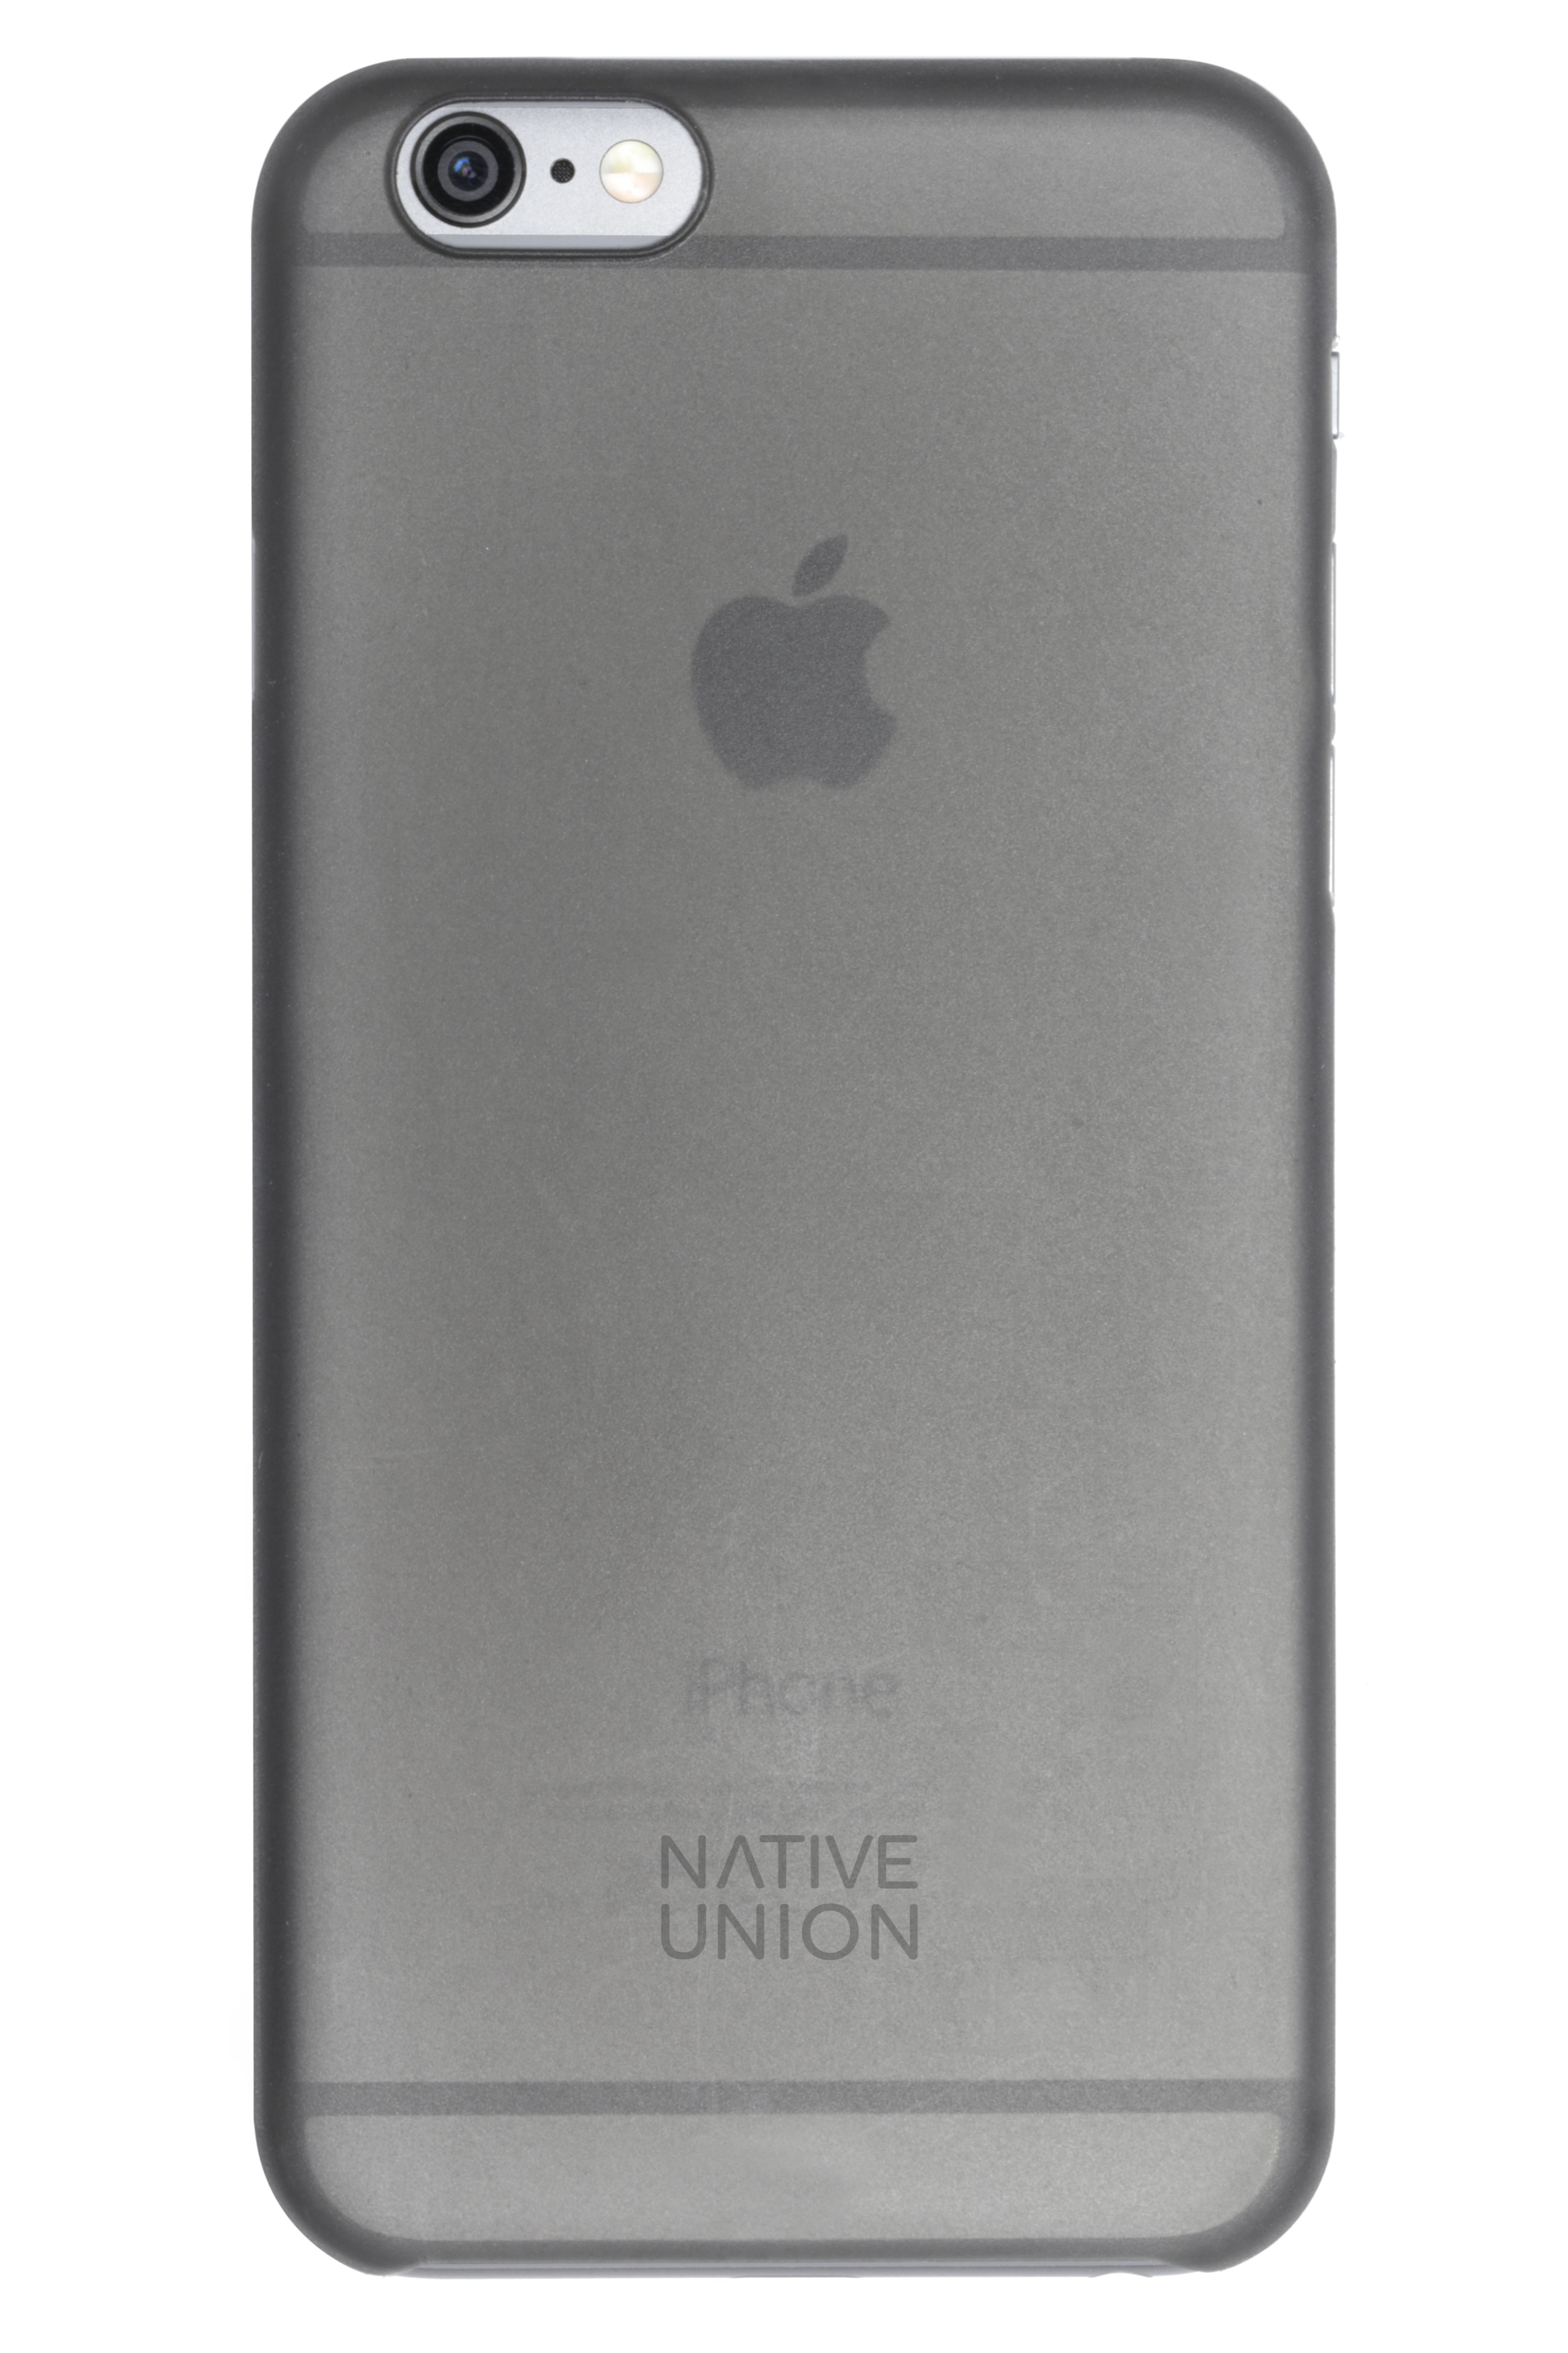 Coque Iphone 6 Native Union Clic Air fumée